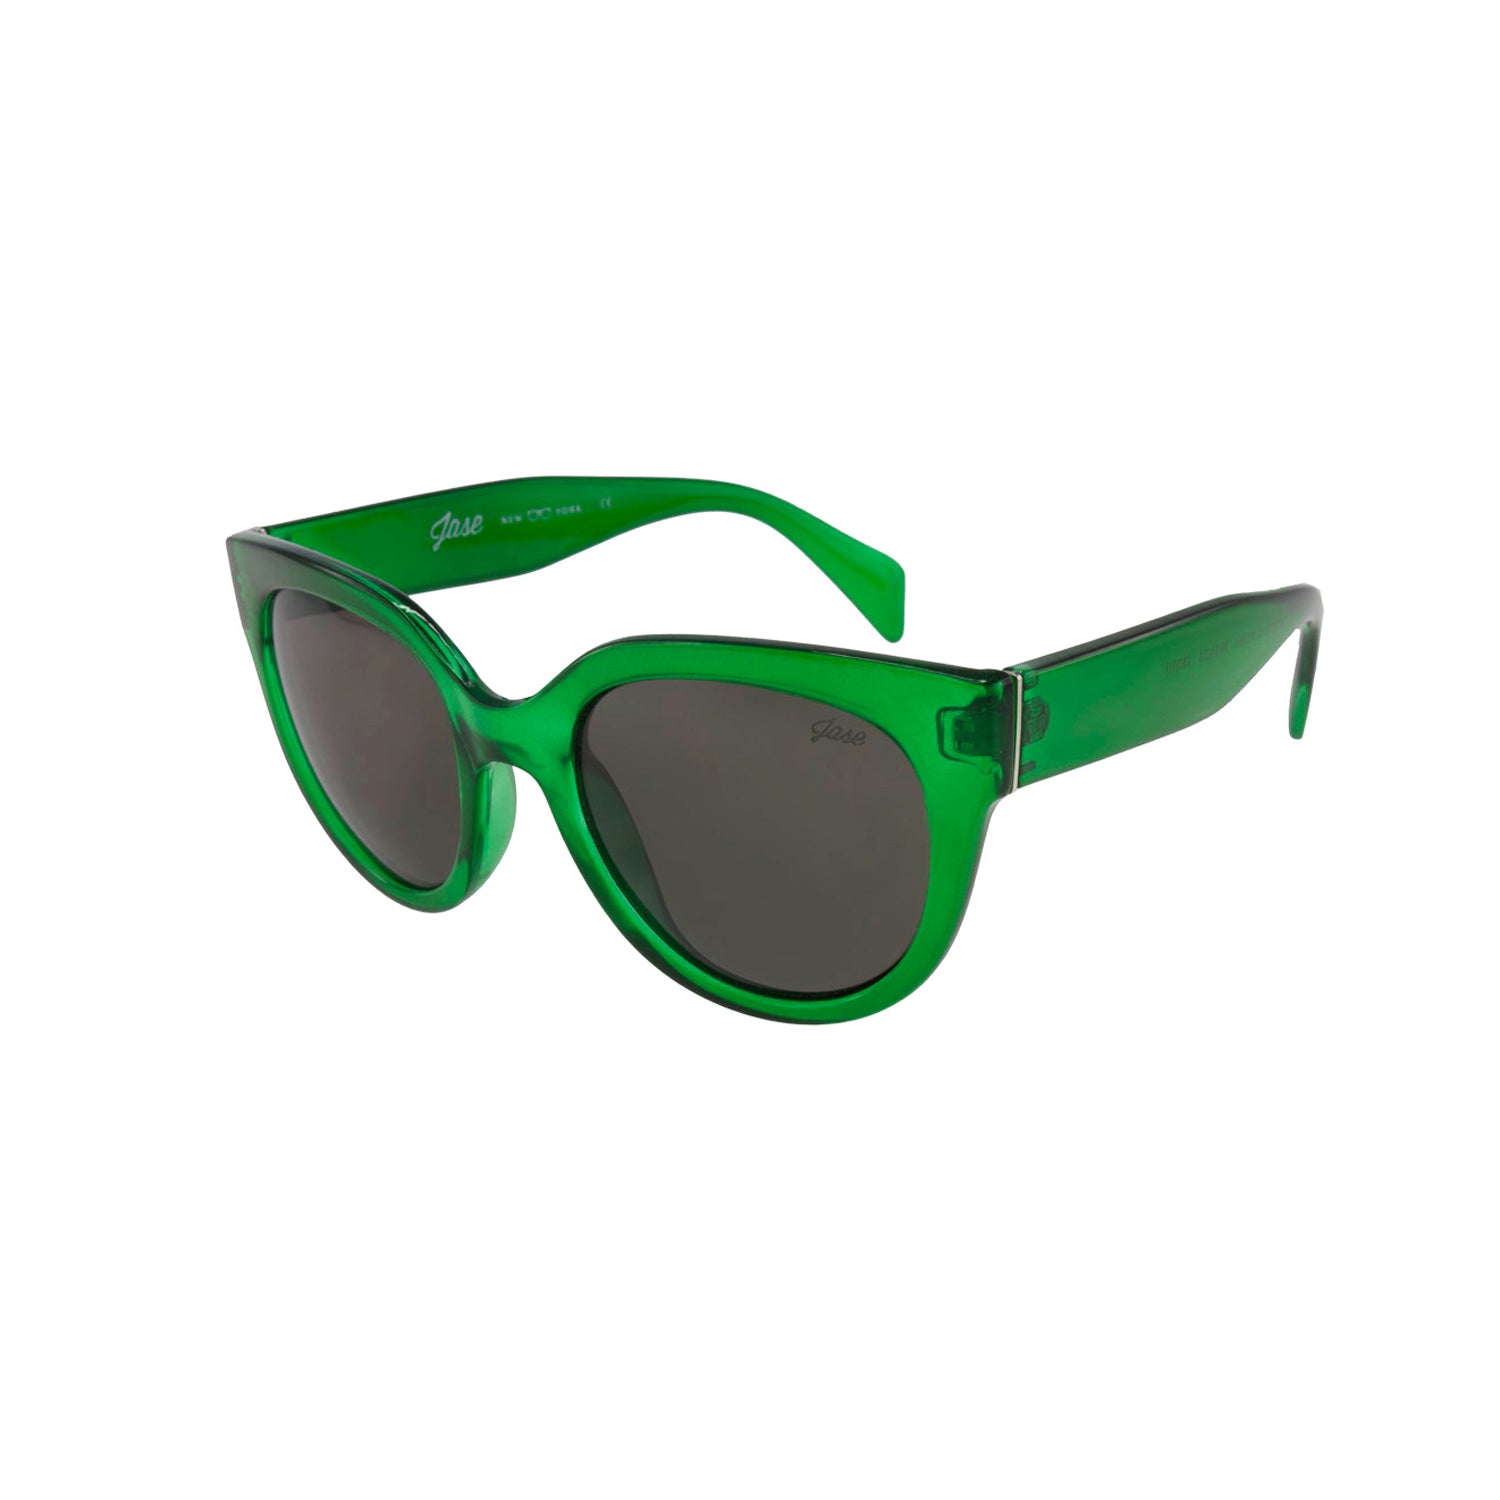 Jase New York Cosette Sunglasses in Emerald Green